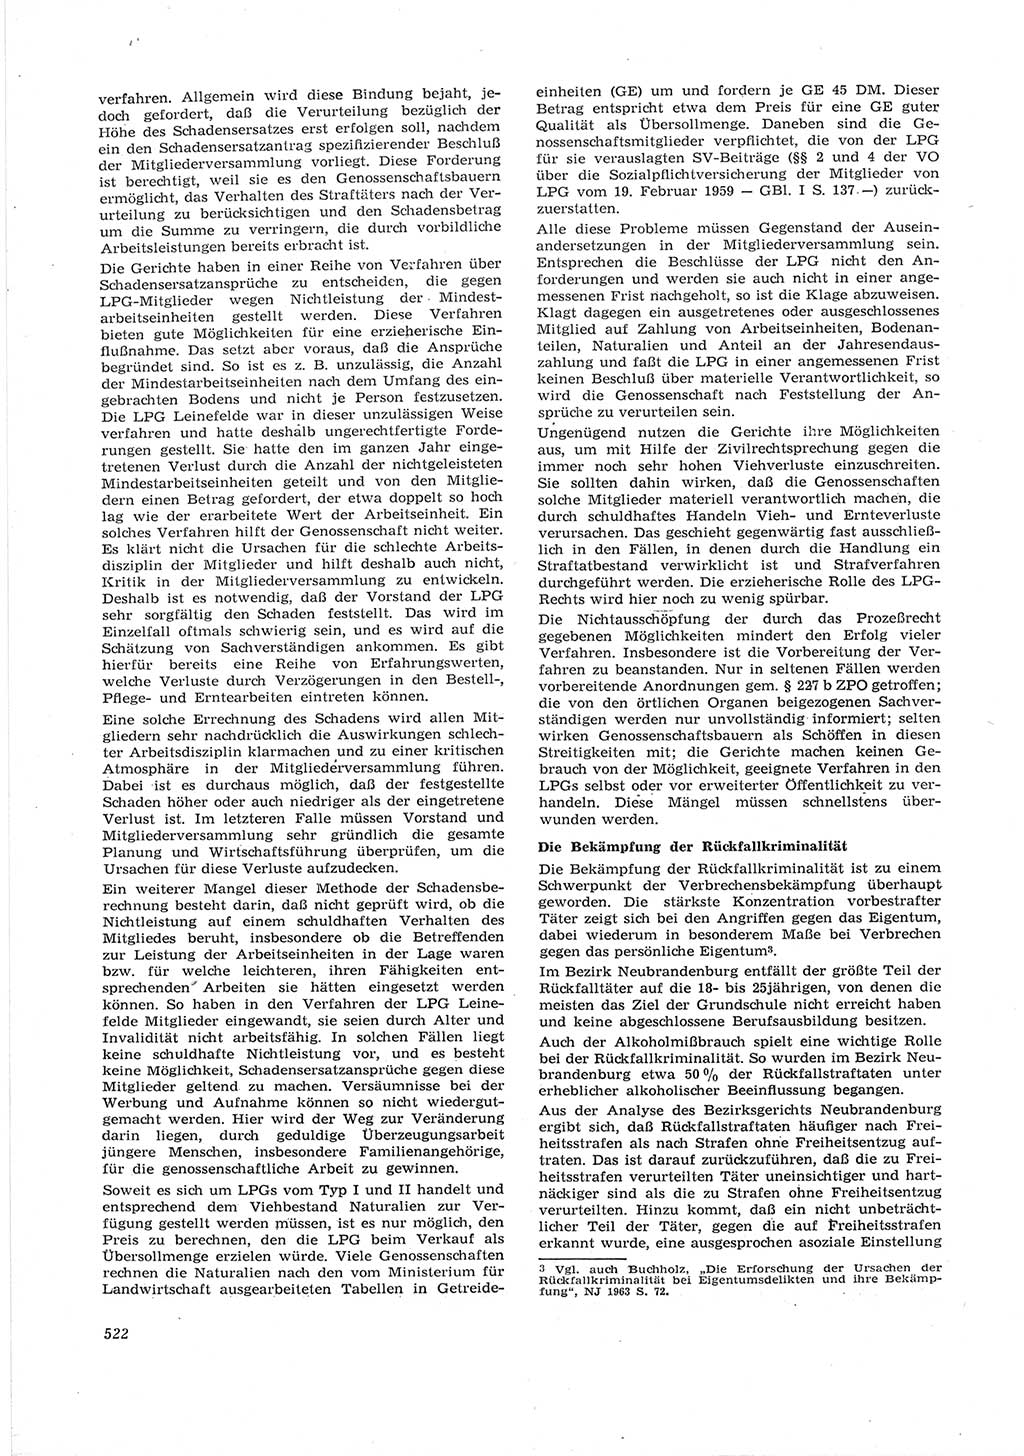 Neue Justiz (NJ), Zeitschrift für Recht und Rechtswissenschaft [Deutsche Demokratische Republik (DDR)], 17. Jahrgang 1963, Seite 522 (NJ DDR 1963, S. 522)